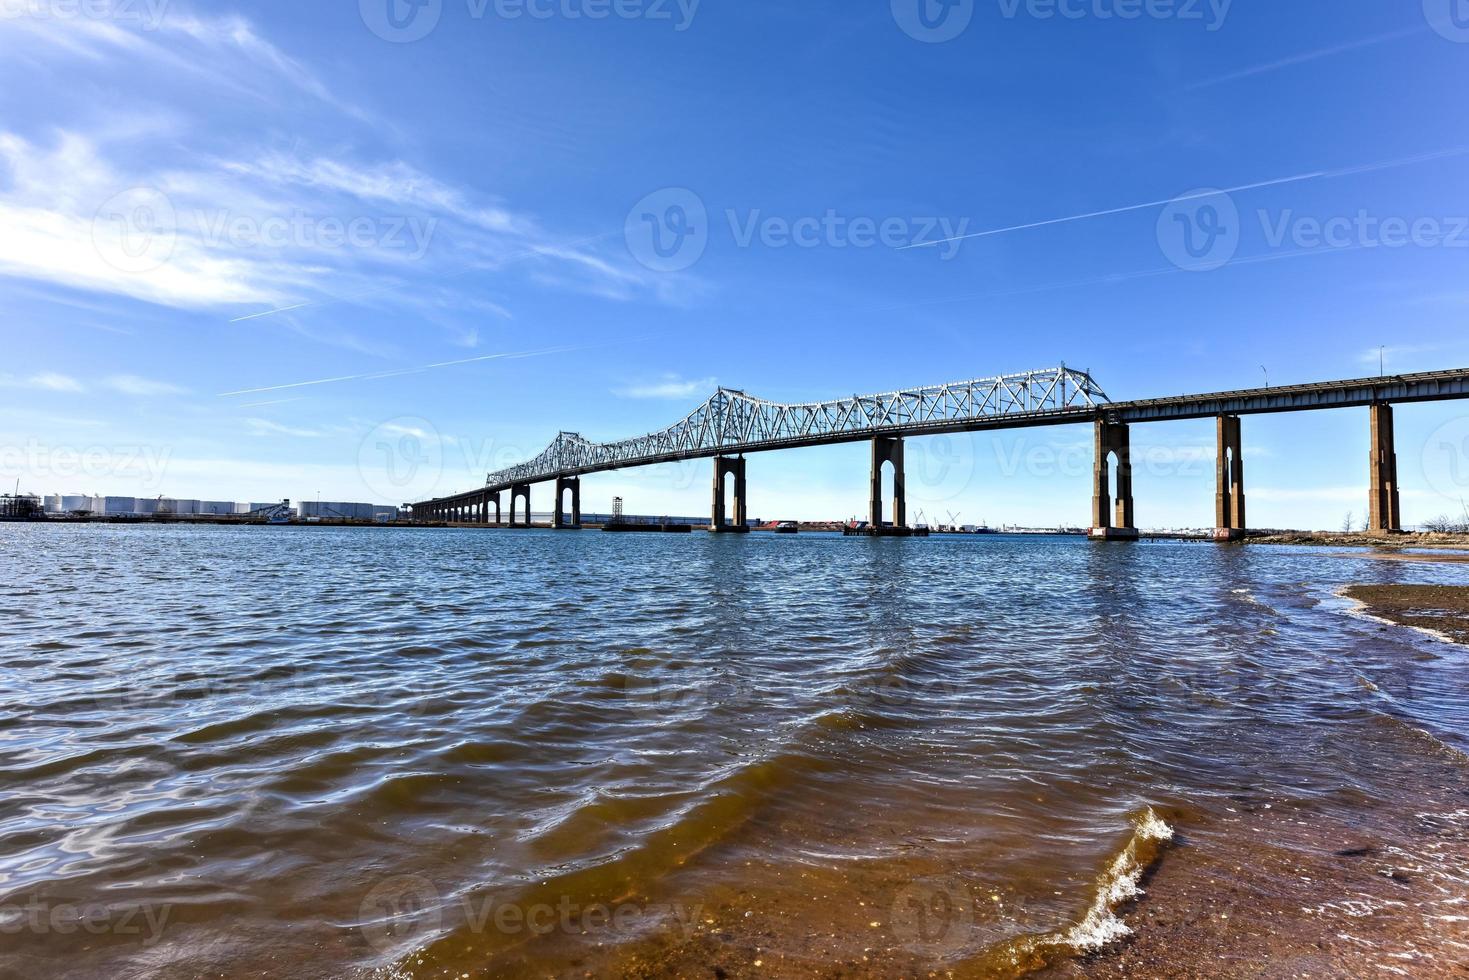 de buitenbrug kruispunt is een cantilever brug welke overspanningen de Arthur doden. de buitenbrug, net zo het is vaak bekend, verbindt Perth amboy, nieuw Jersey, met staten eiland, nieuw york. foto